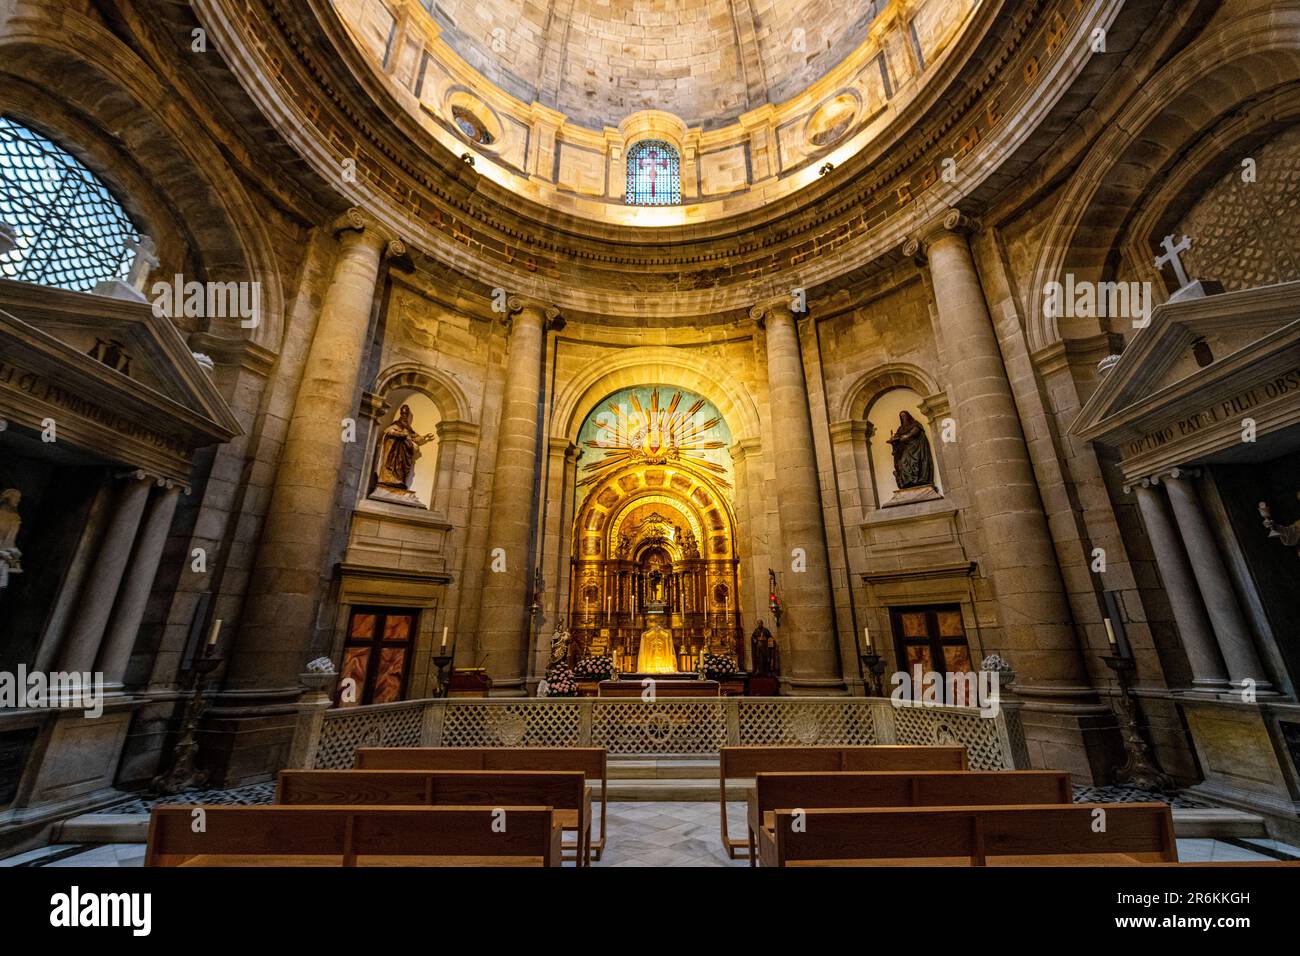 Intérieur de la cathédrale, Saint-Jacques-de-Compostelle, site classé au patrimoine mondial de l'UNESCO, Galice, Espagne, Europe Banque D'Images